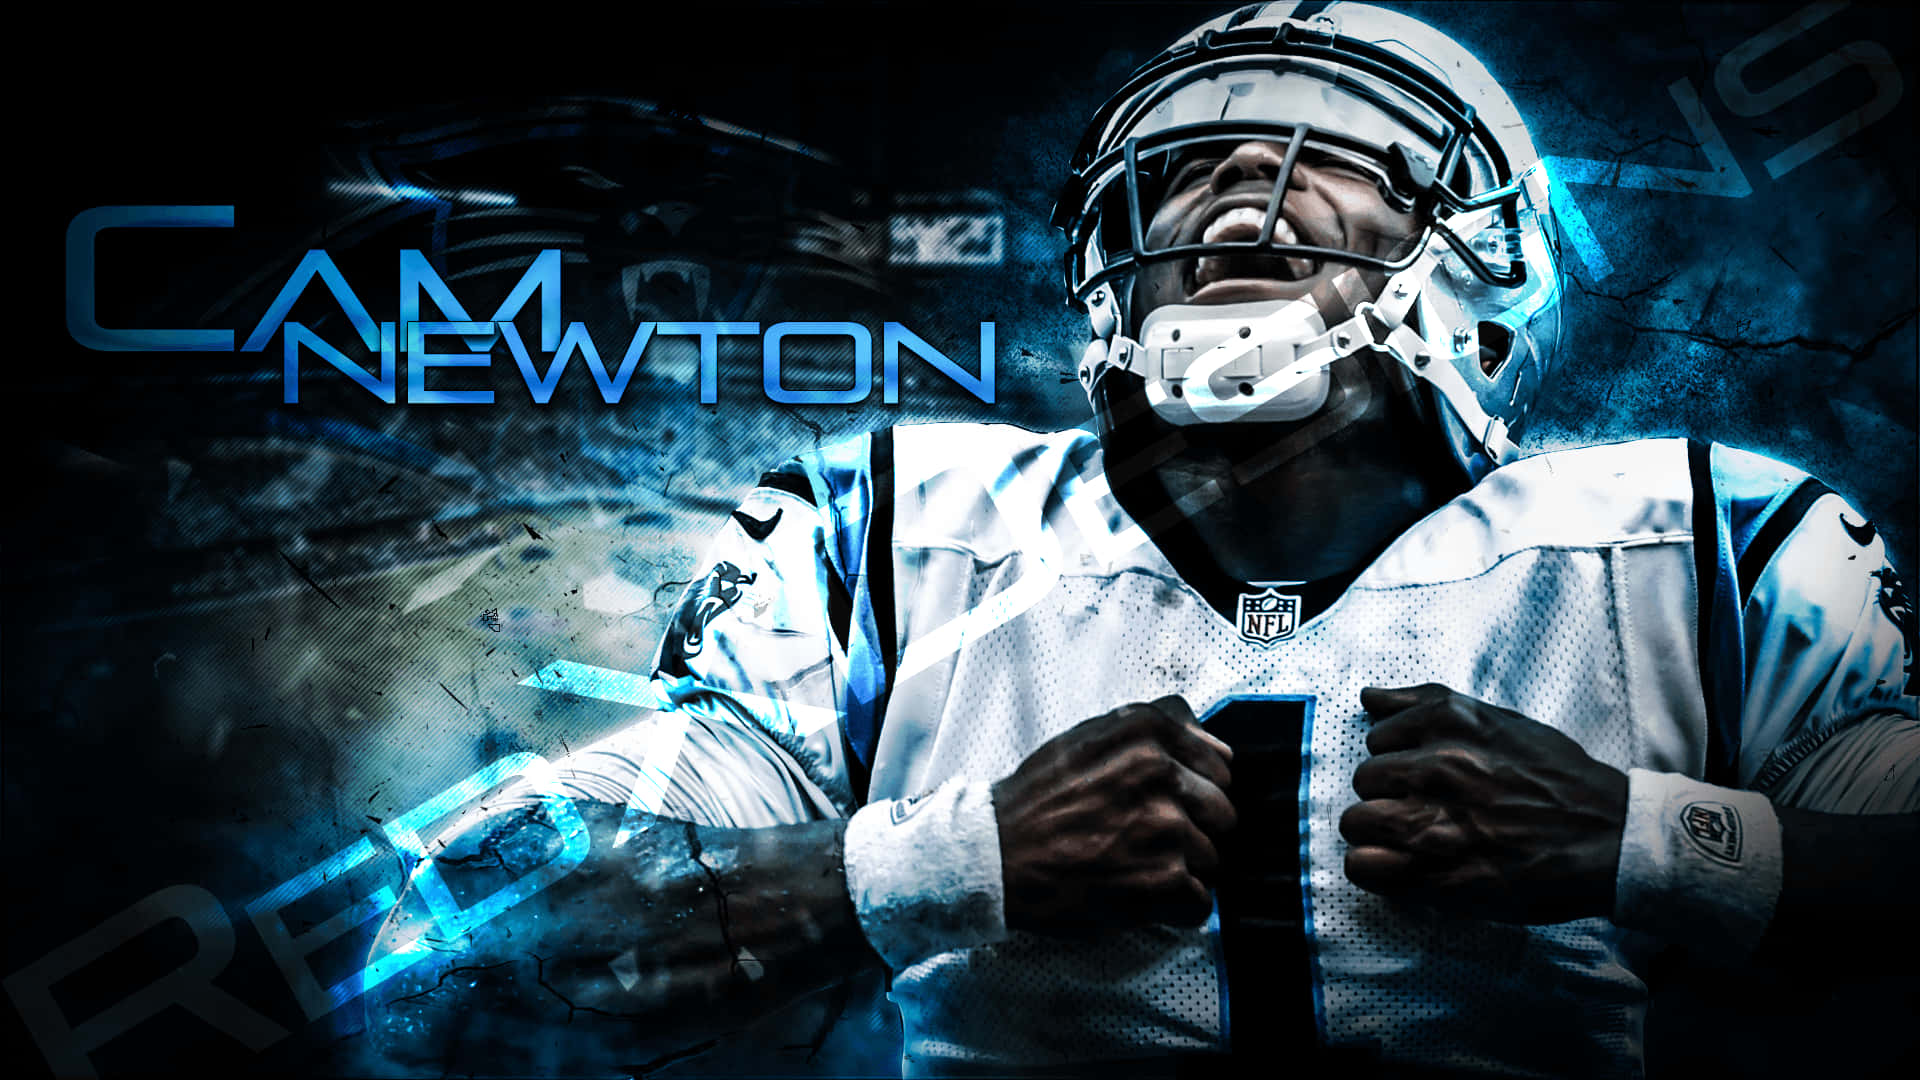 Cam Newton, Carolina Panthers Quarterback, giver dette kraftige tapet glans. Wallpaper